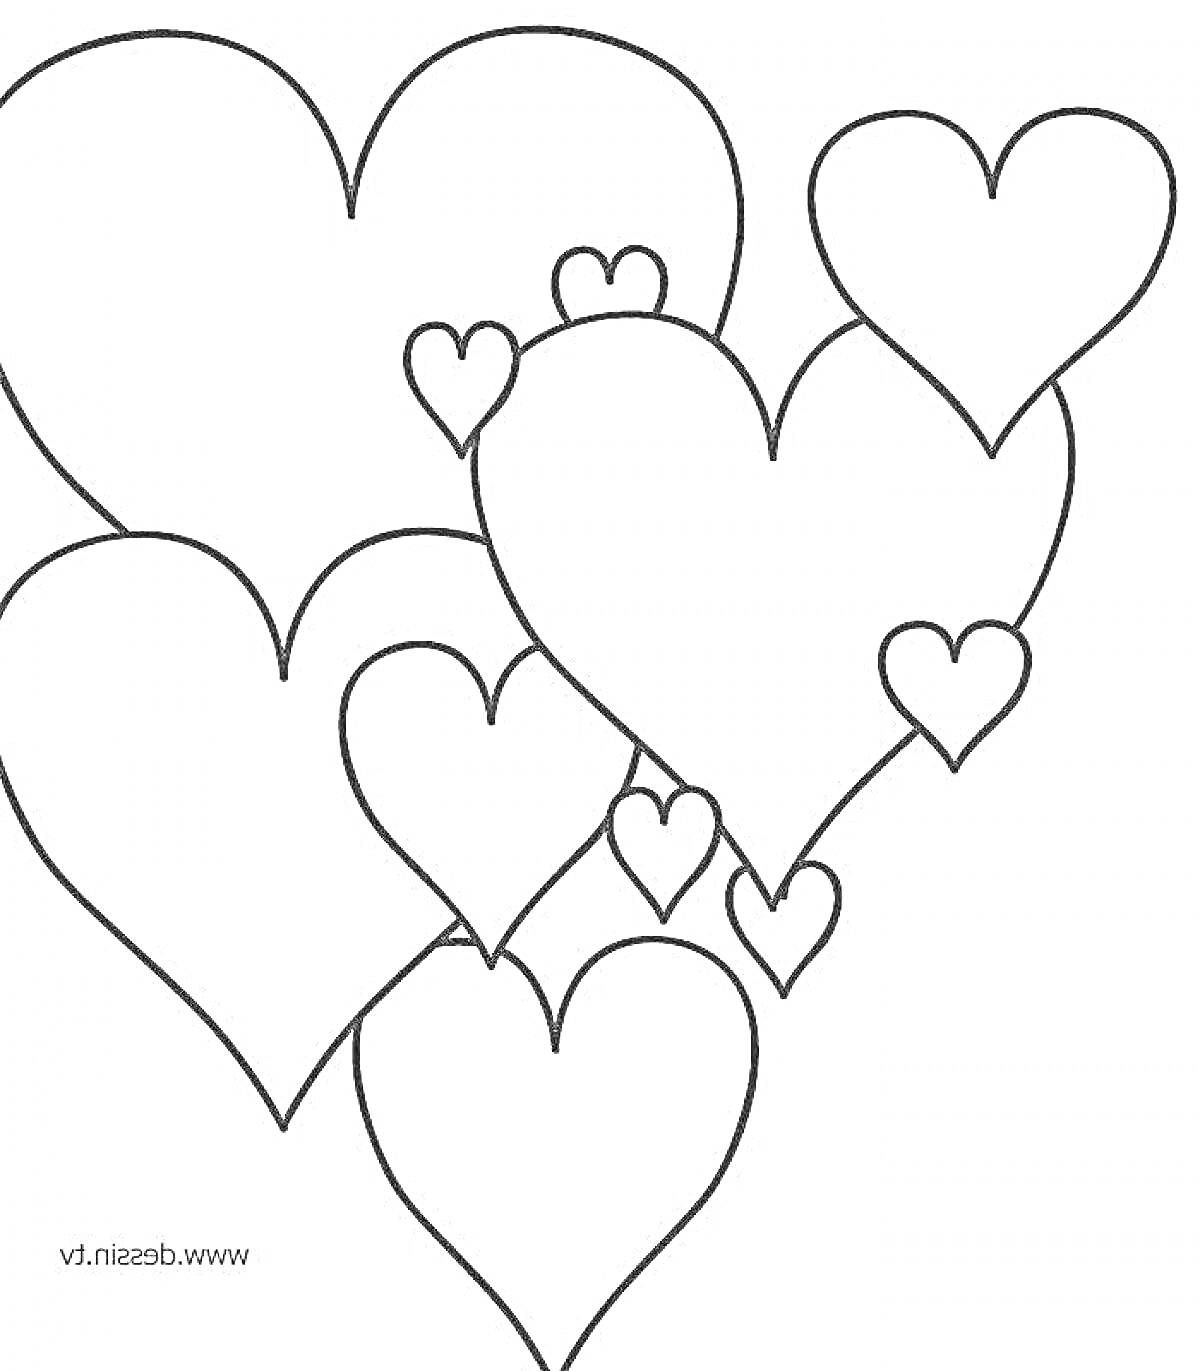 Раскраска Раскраска с изображением восьми различных по размеру сердечек